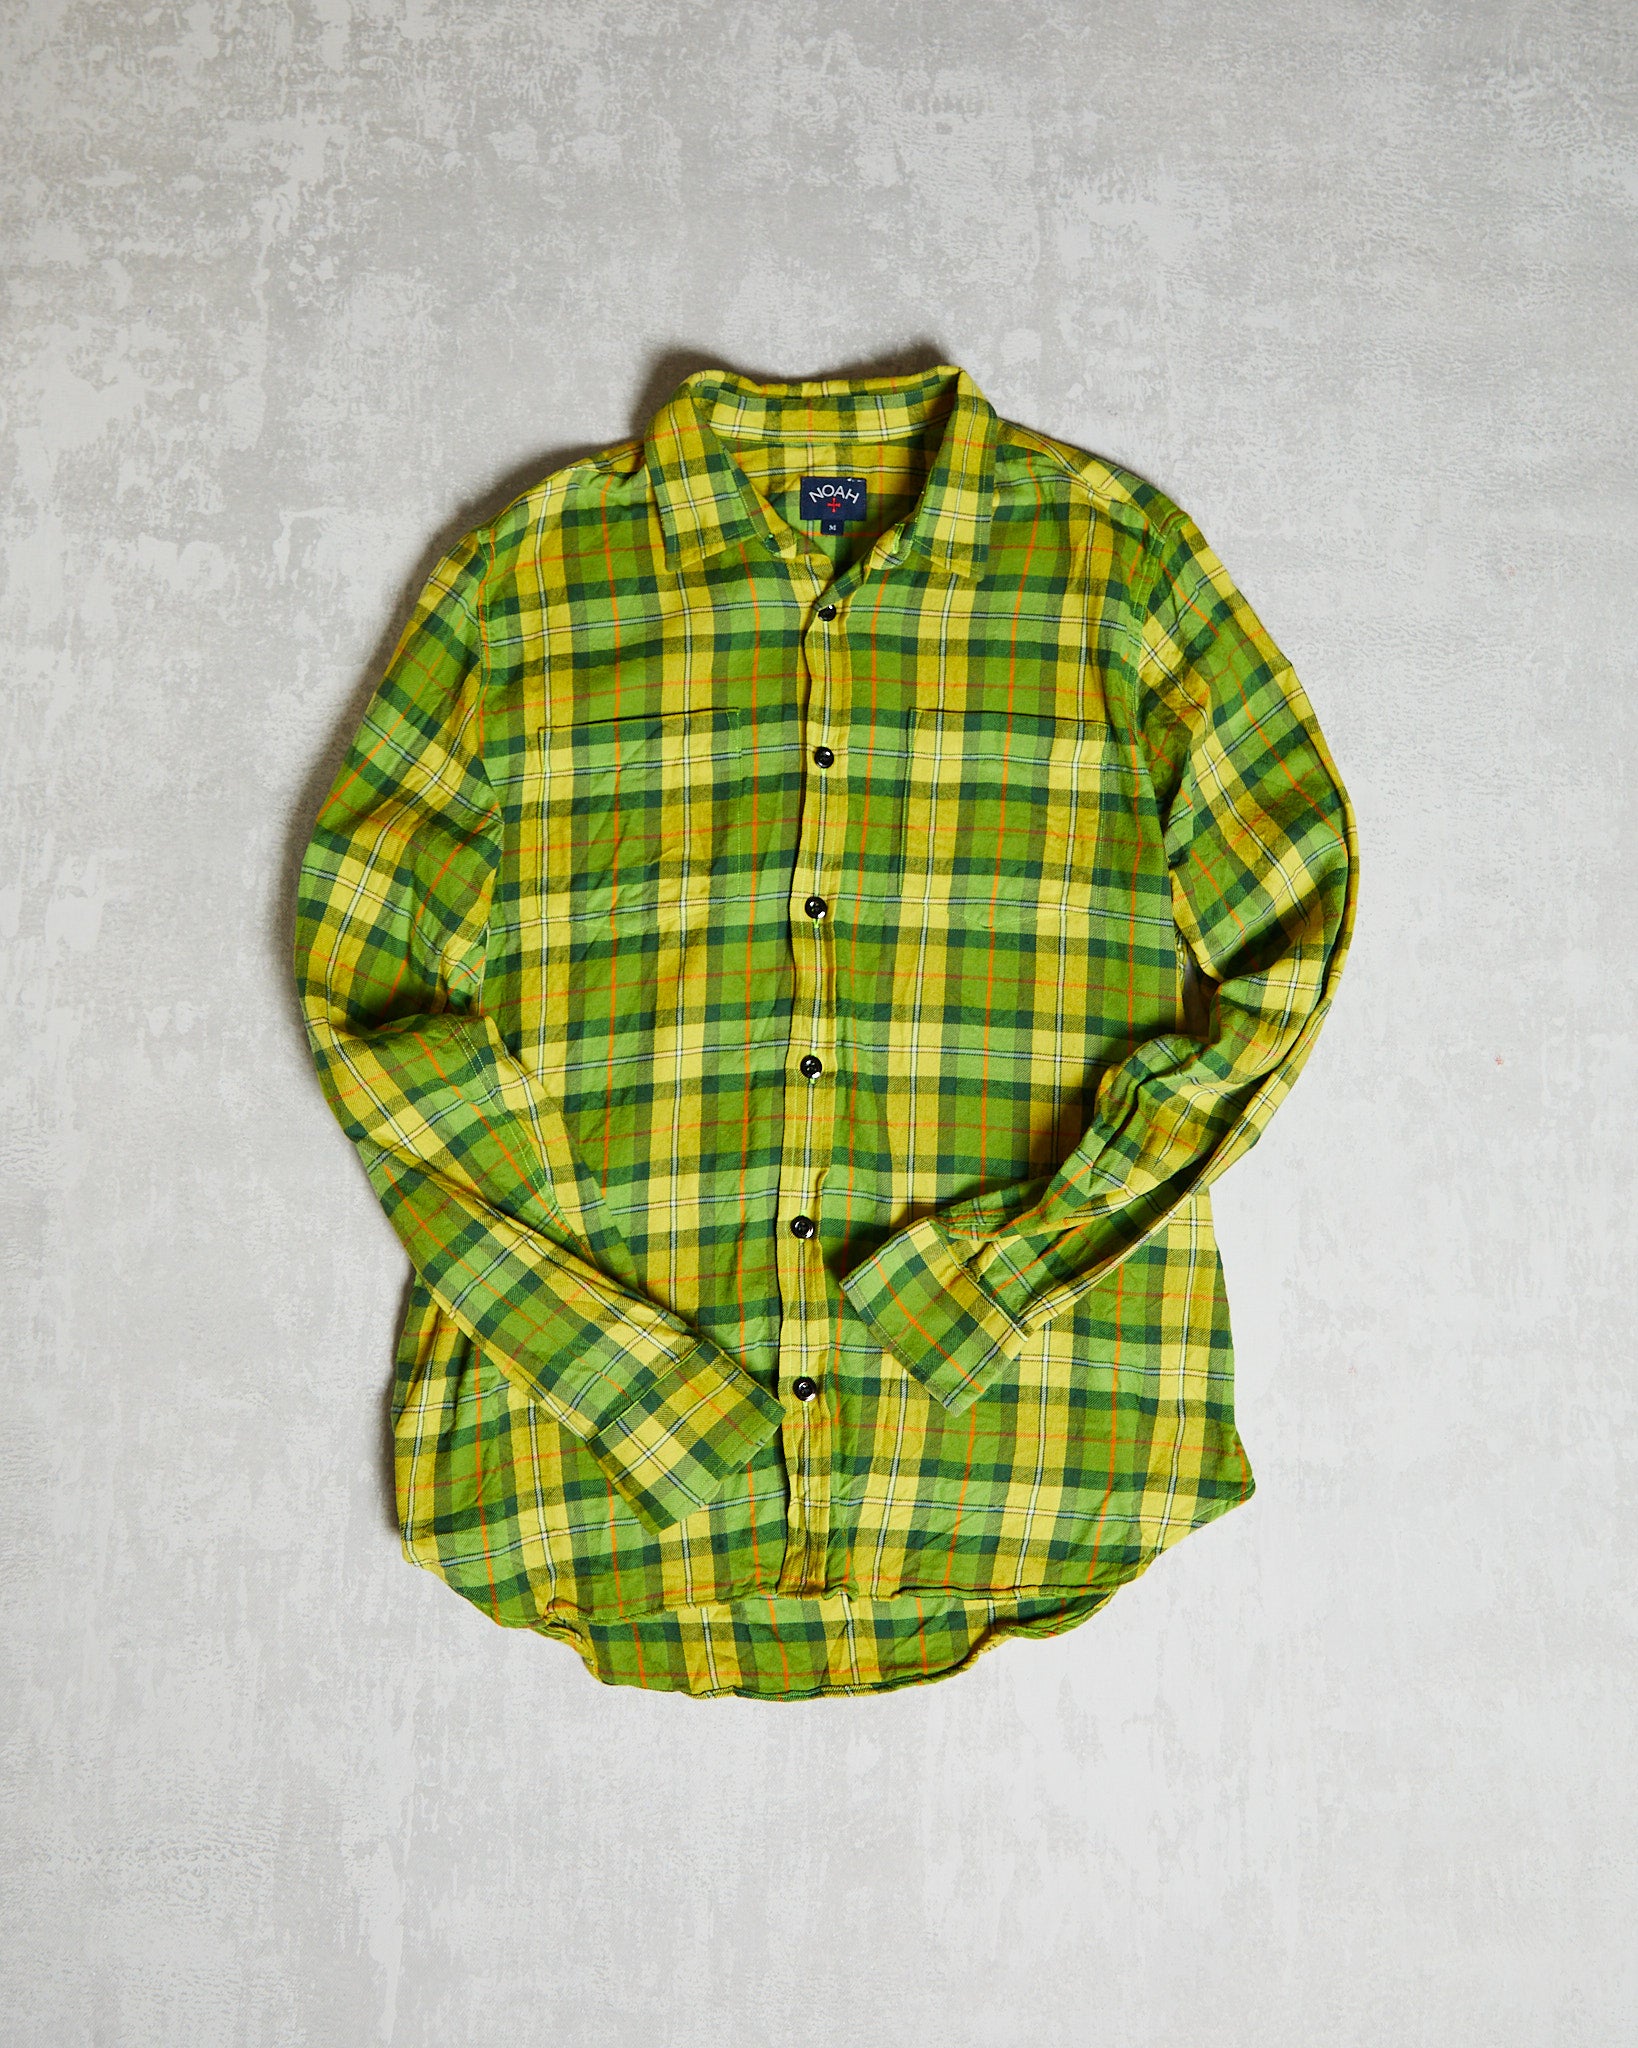 Noah Lightweight Flannel Shirt green yellow